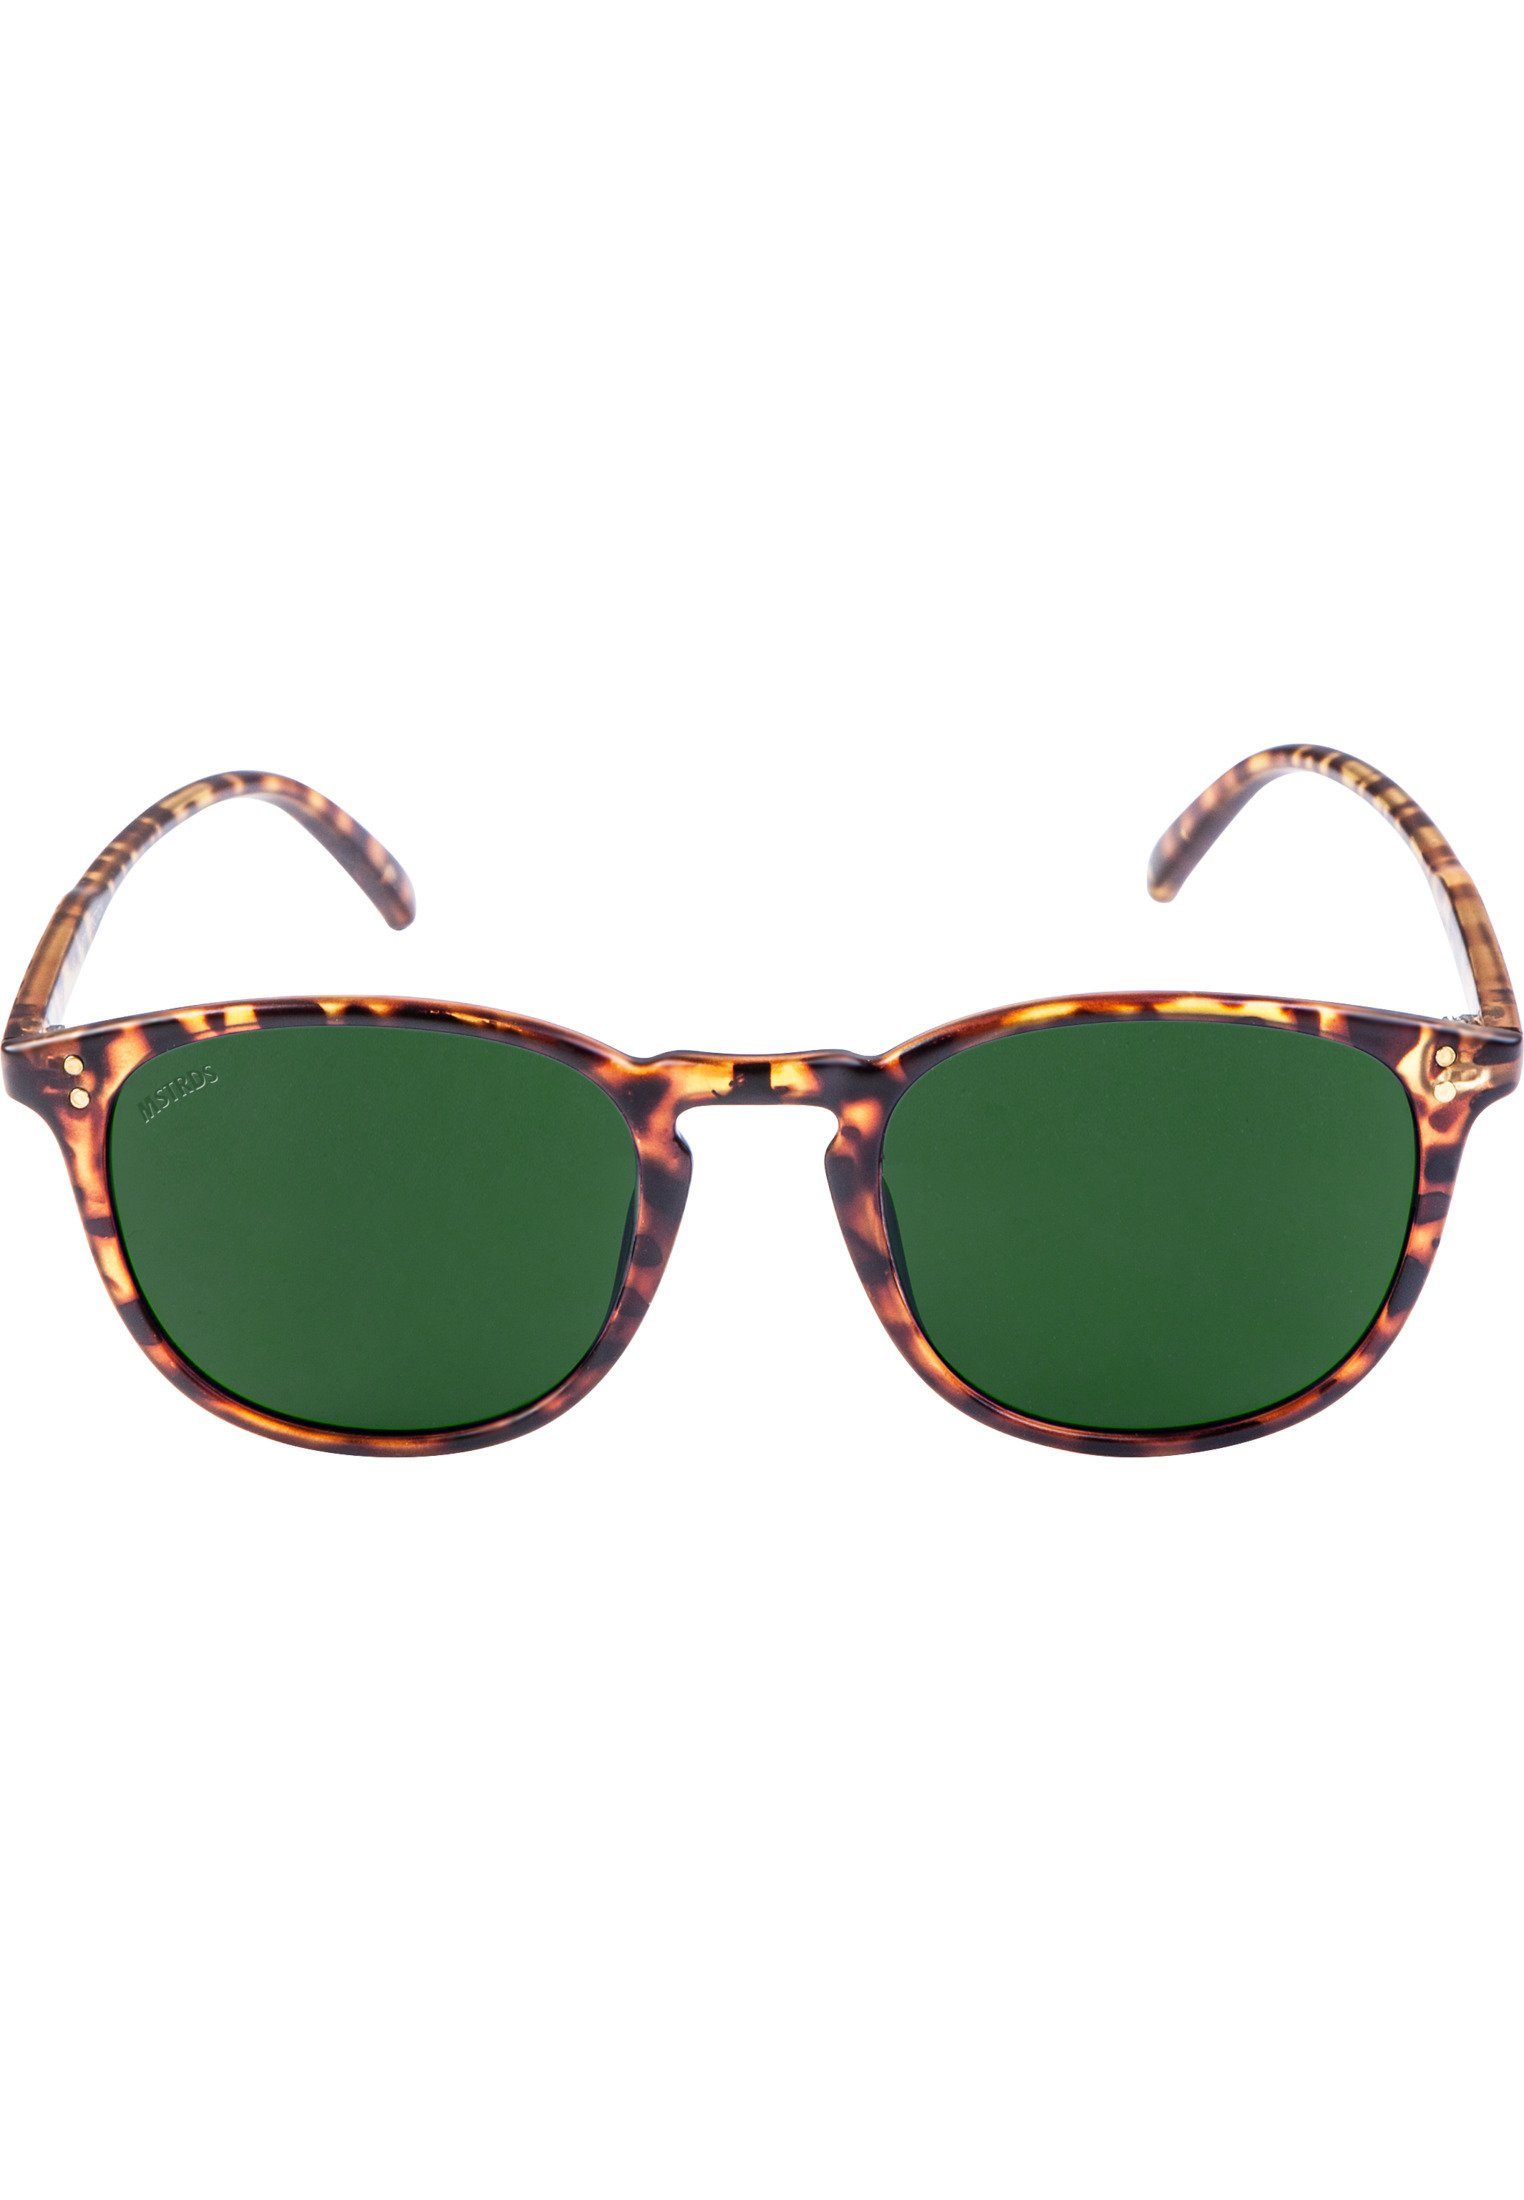 MSTRDS Sonnenbrille Accessoires Sunglasses Arthur havanna/green